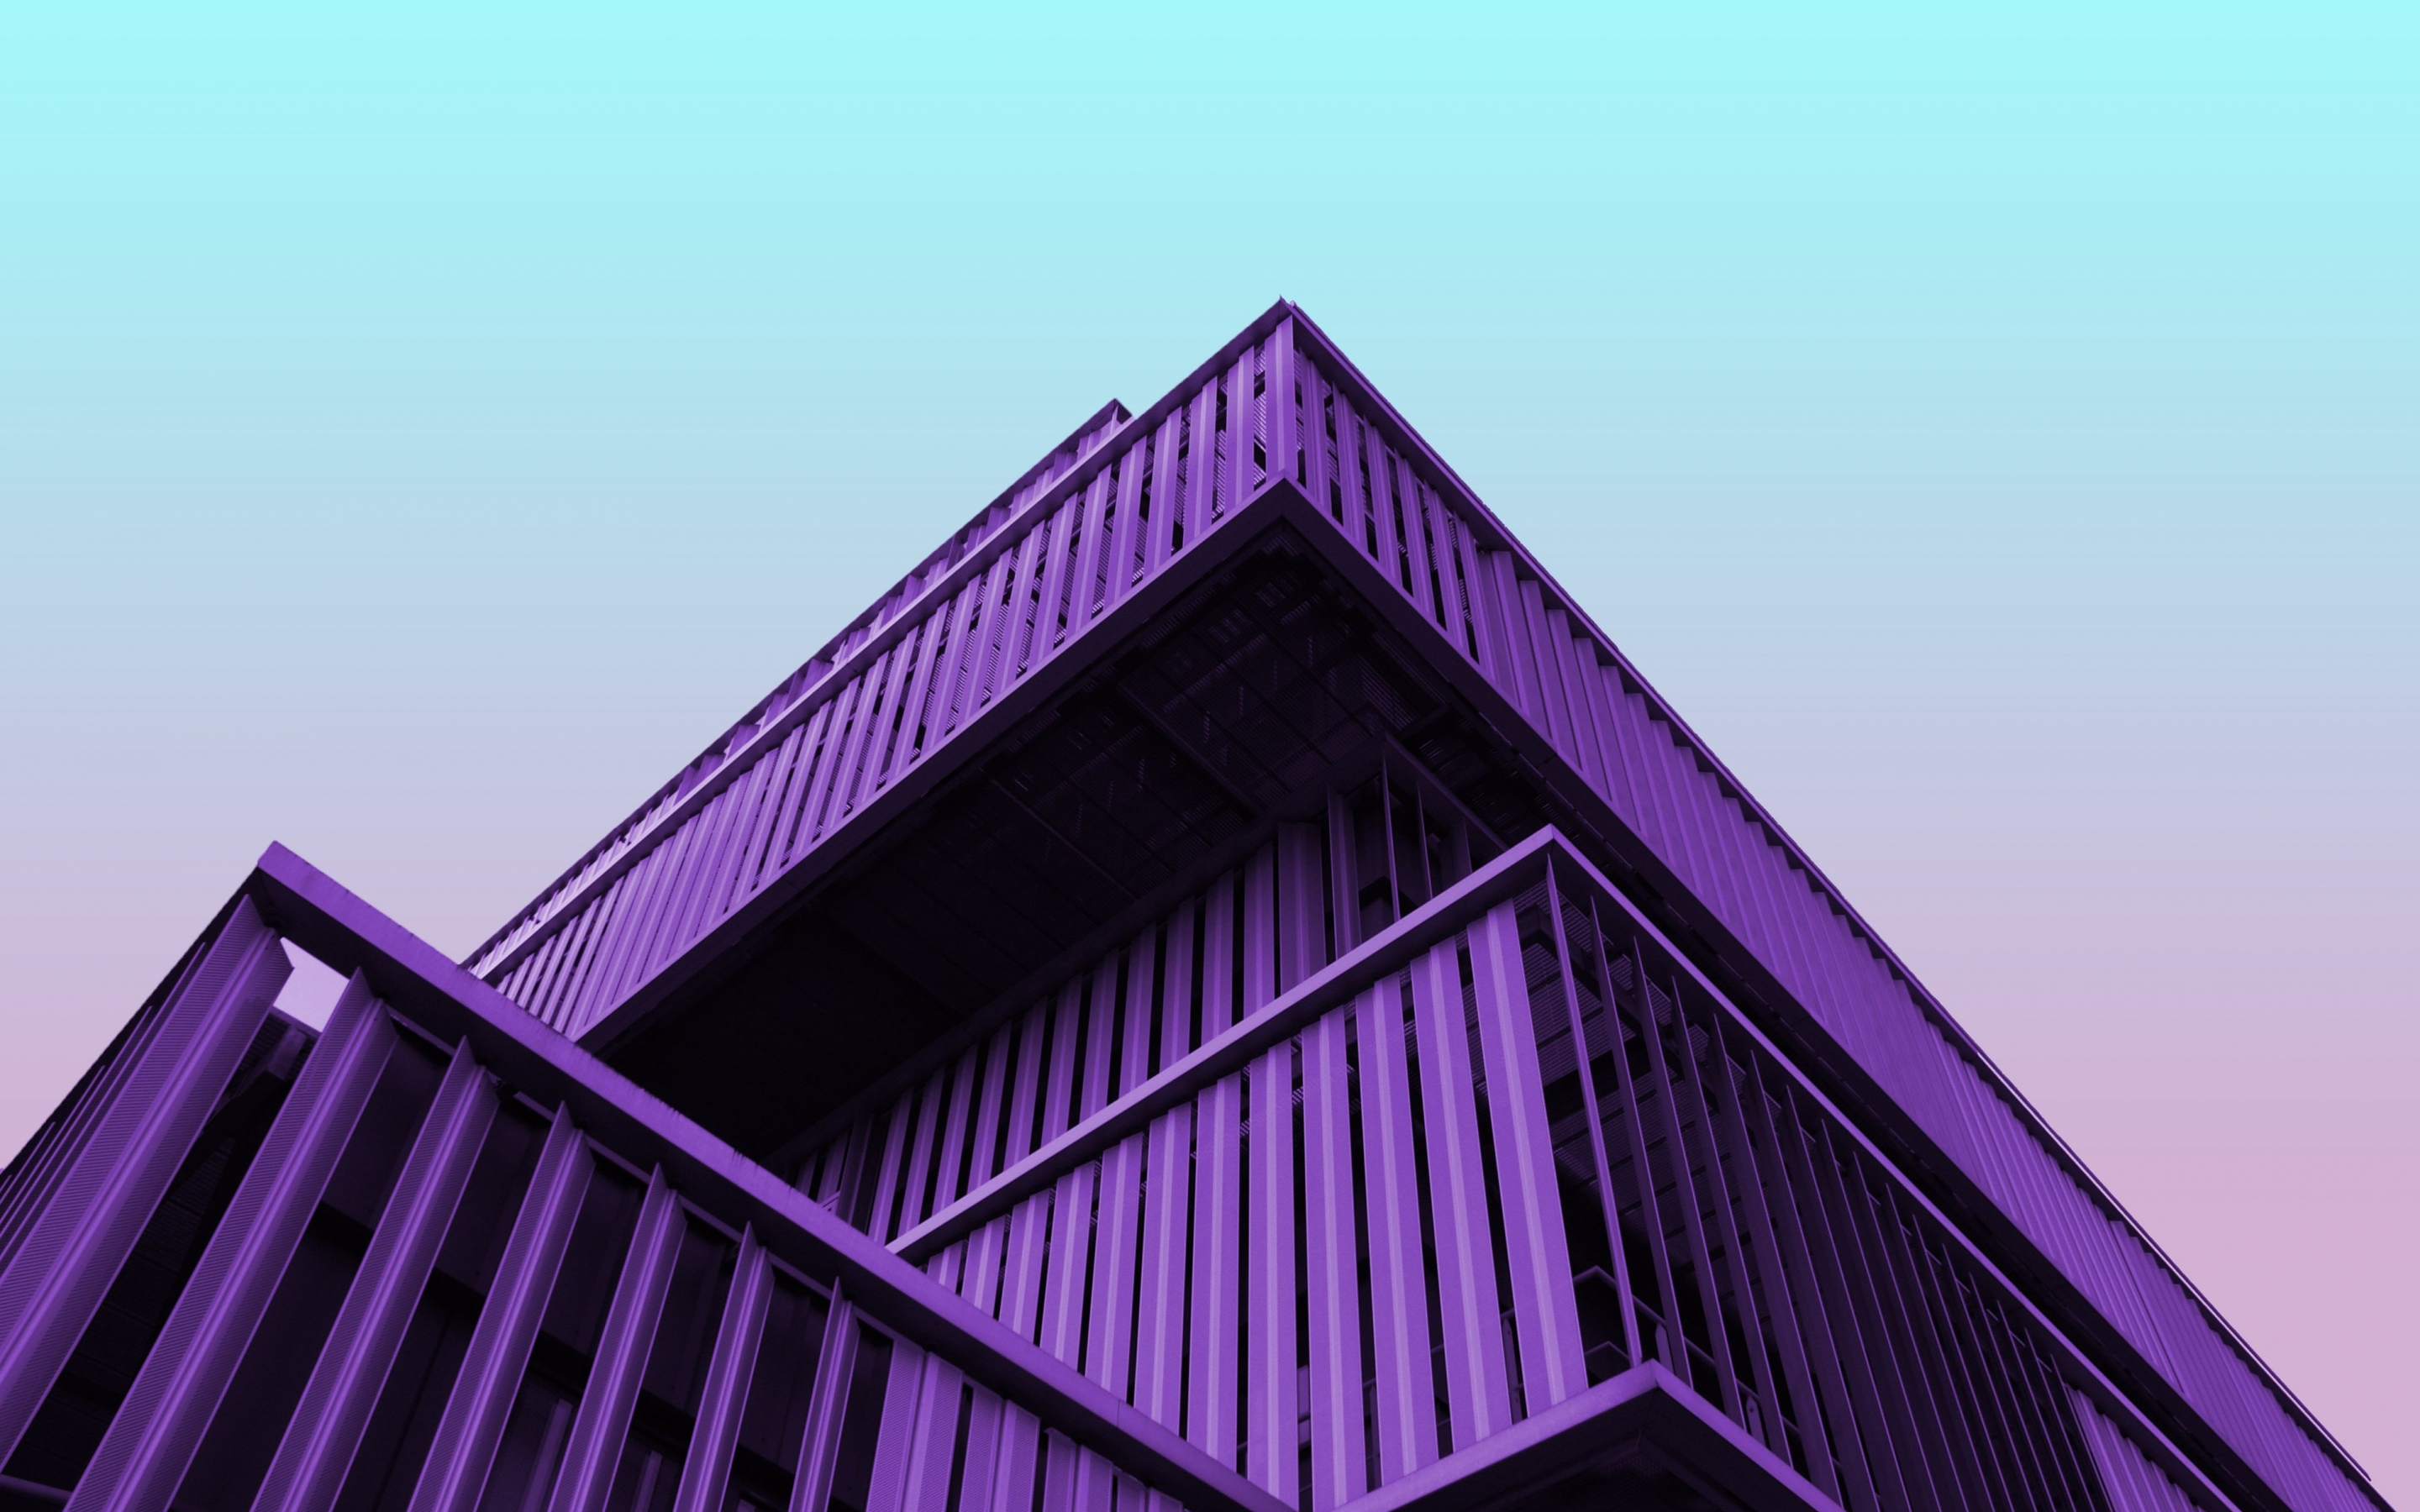 Architecture, facade, purple building, 2880x1800 wallpaper